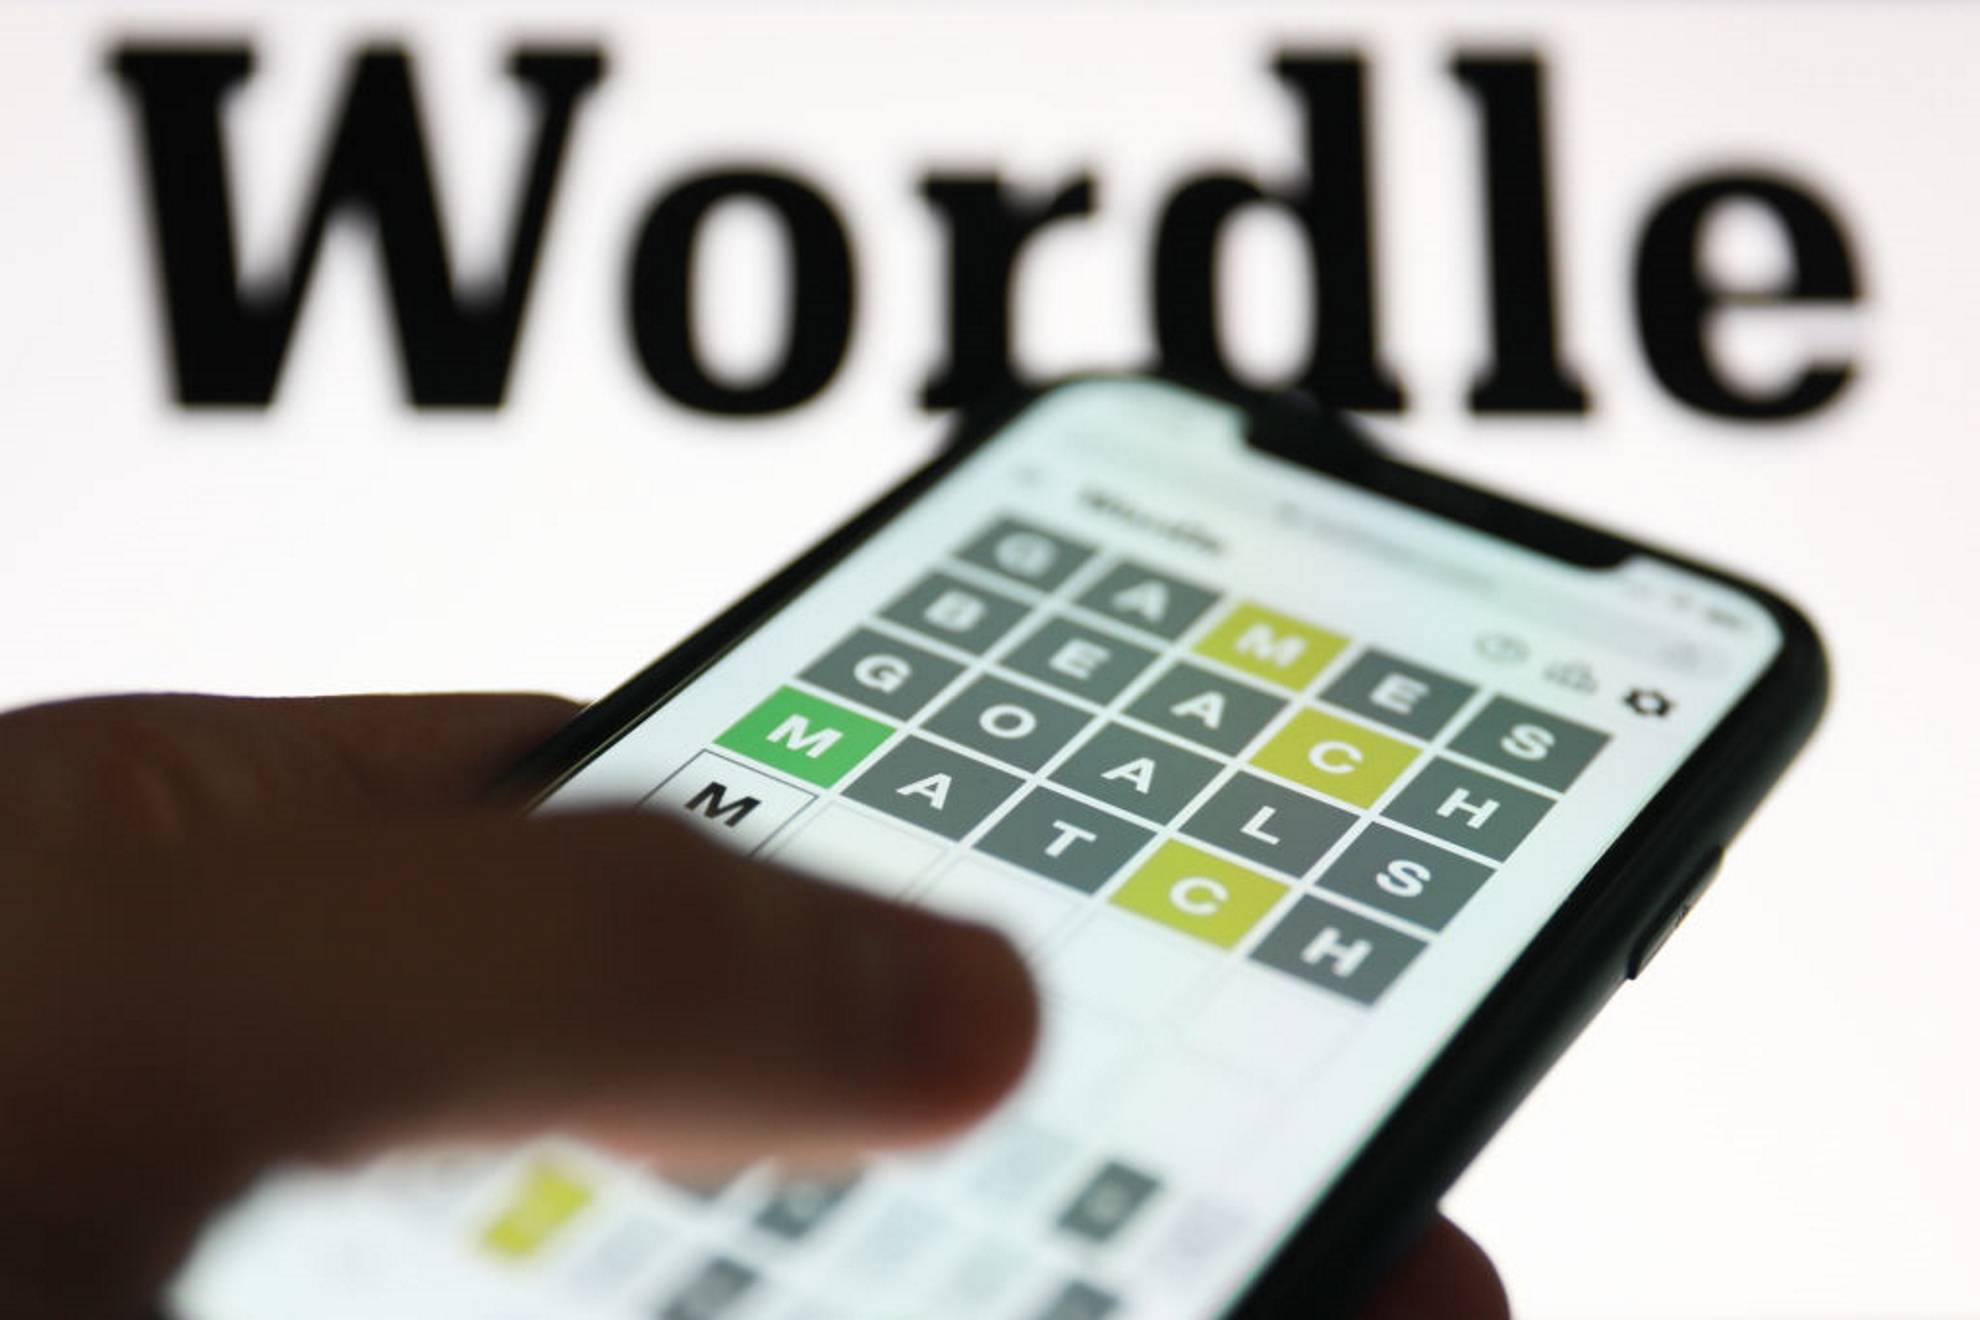 Wordle espaol hoy, 11 de abril: normal, tildes y cientfico | Soluciones y pistas para adivinar la palabra